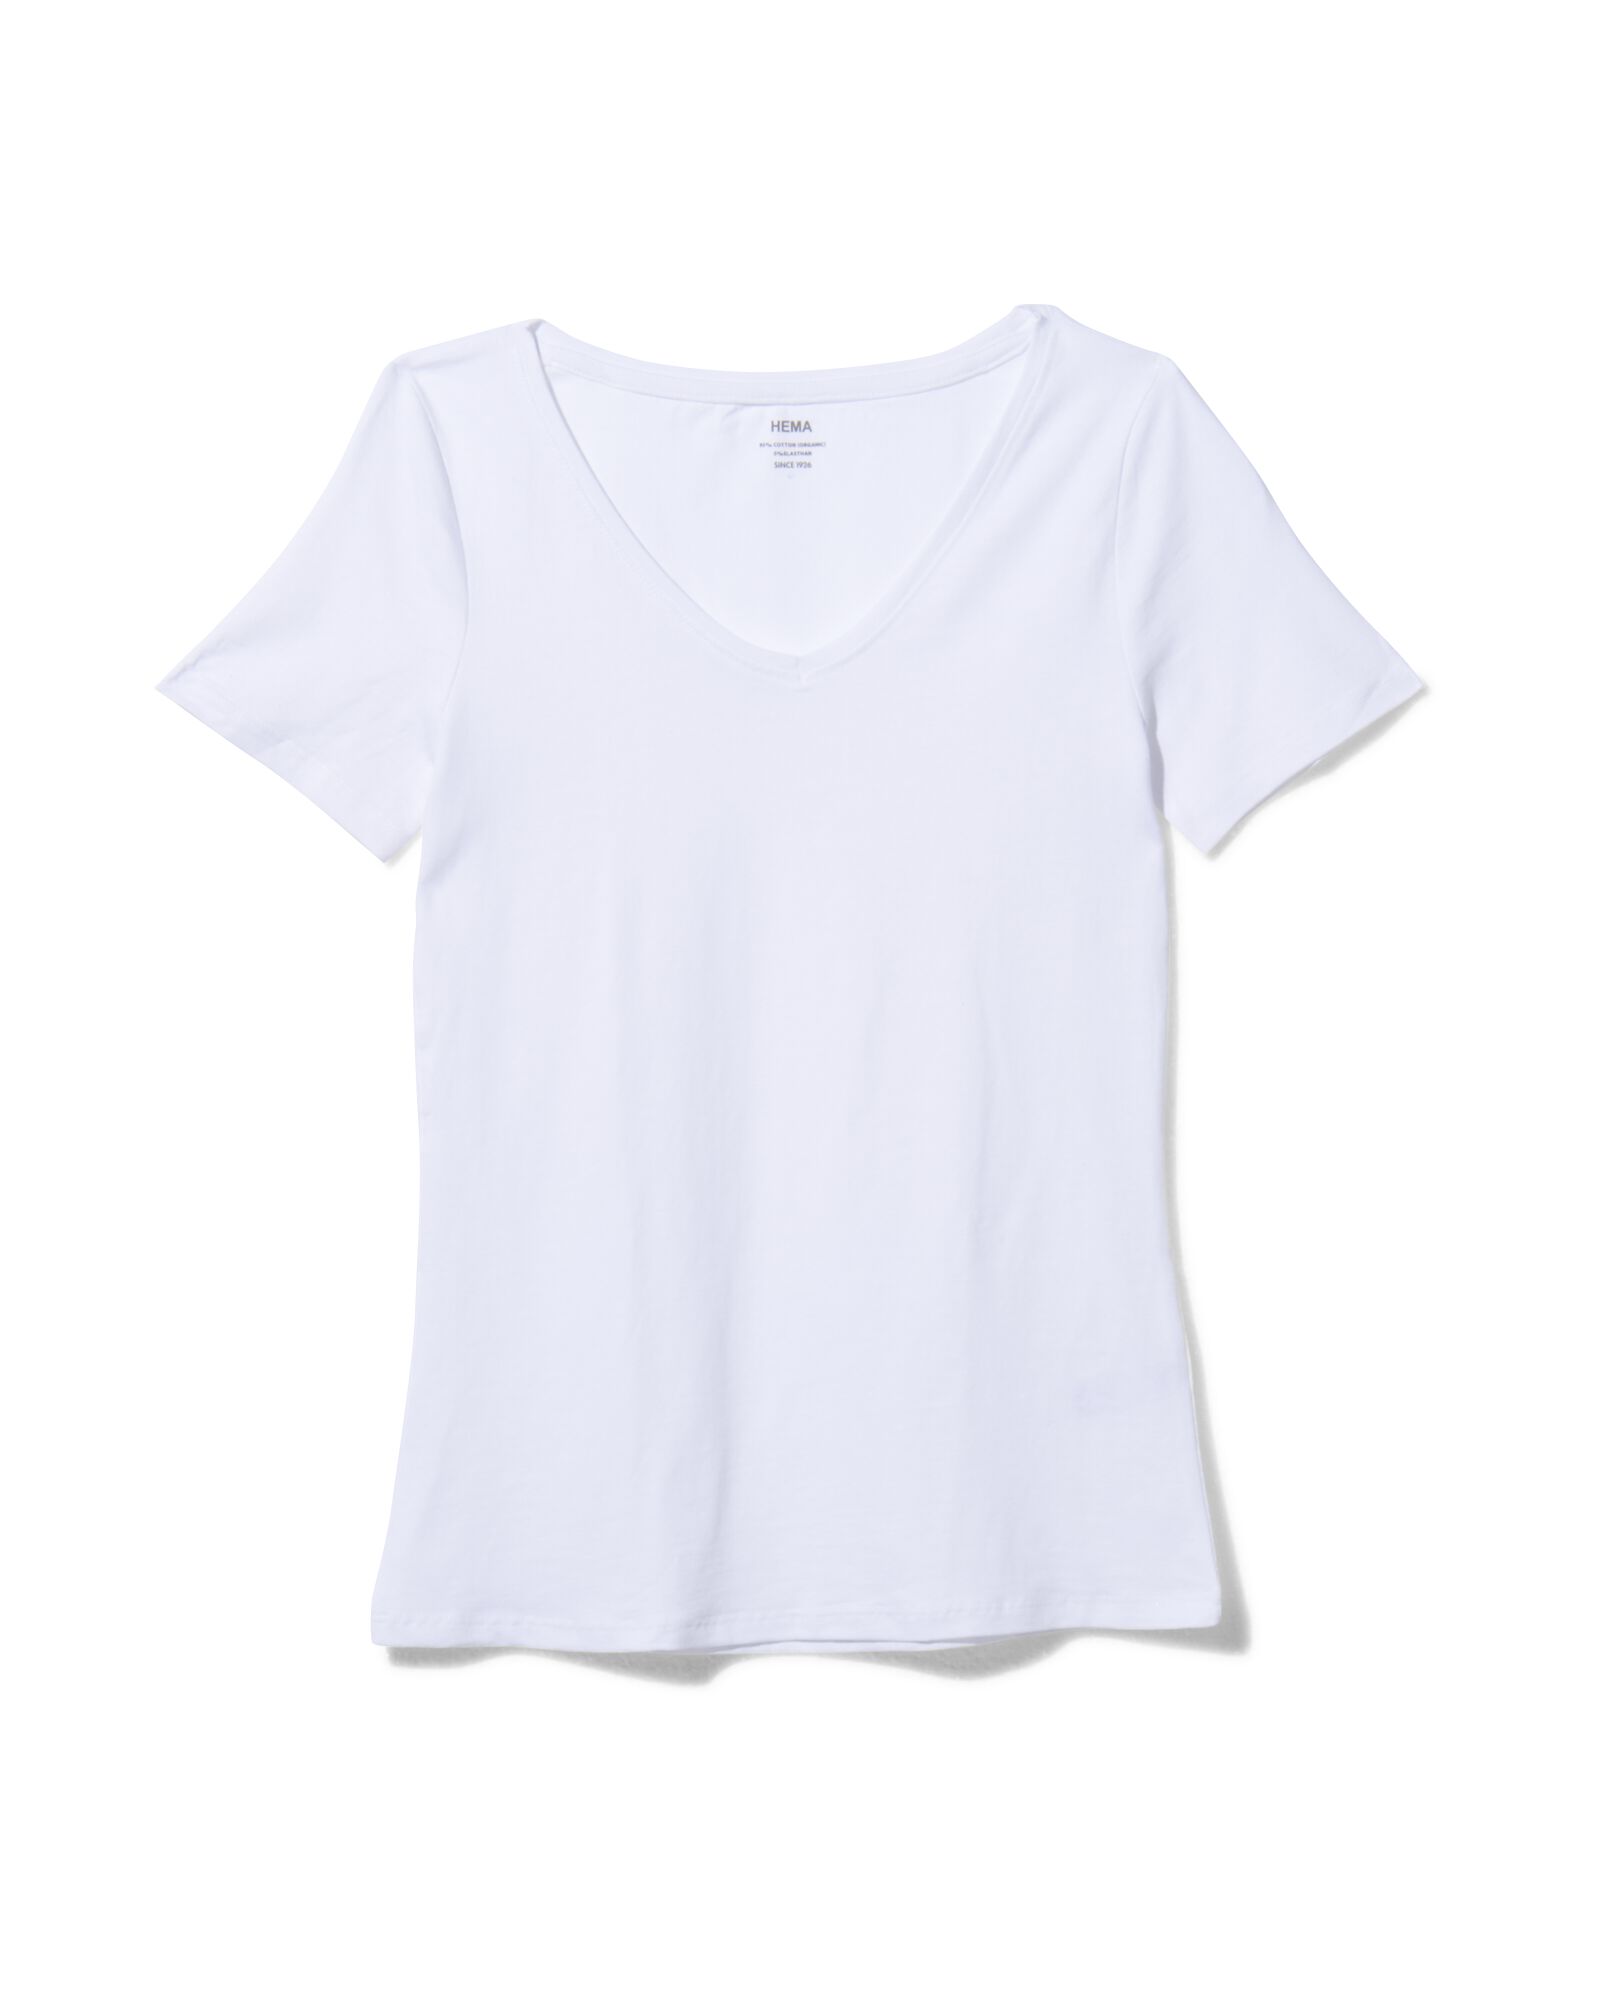 Damen-T-Shirt weiß S - 36301761 - HEMA